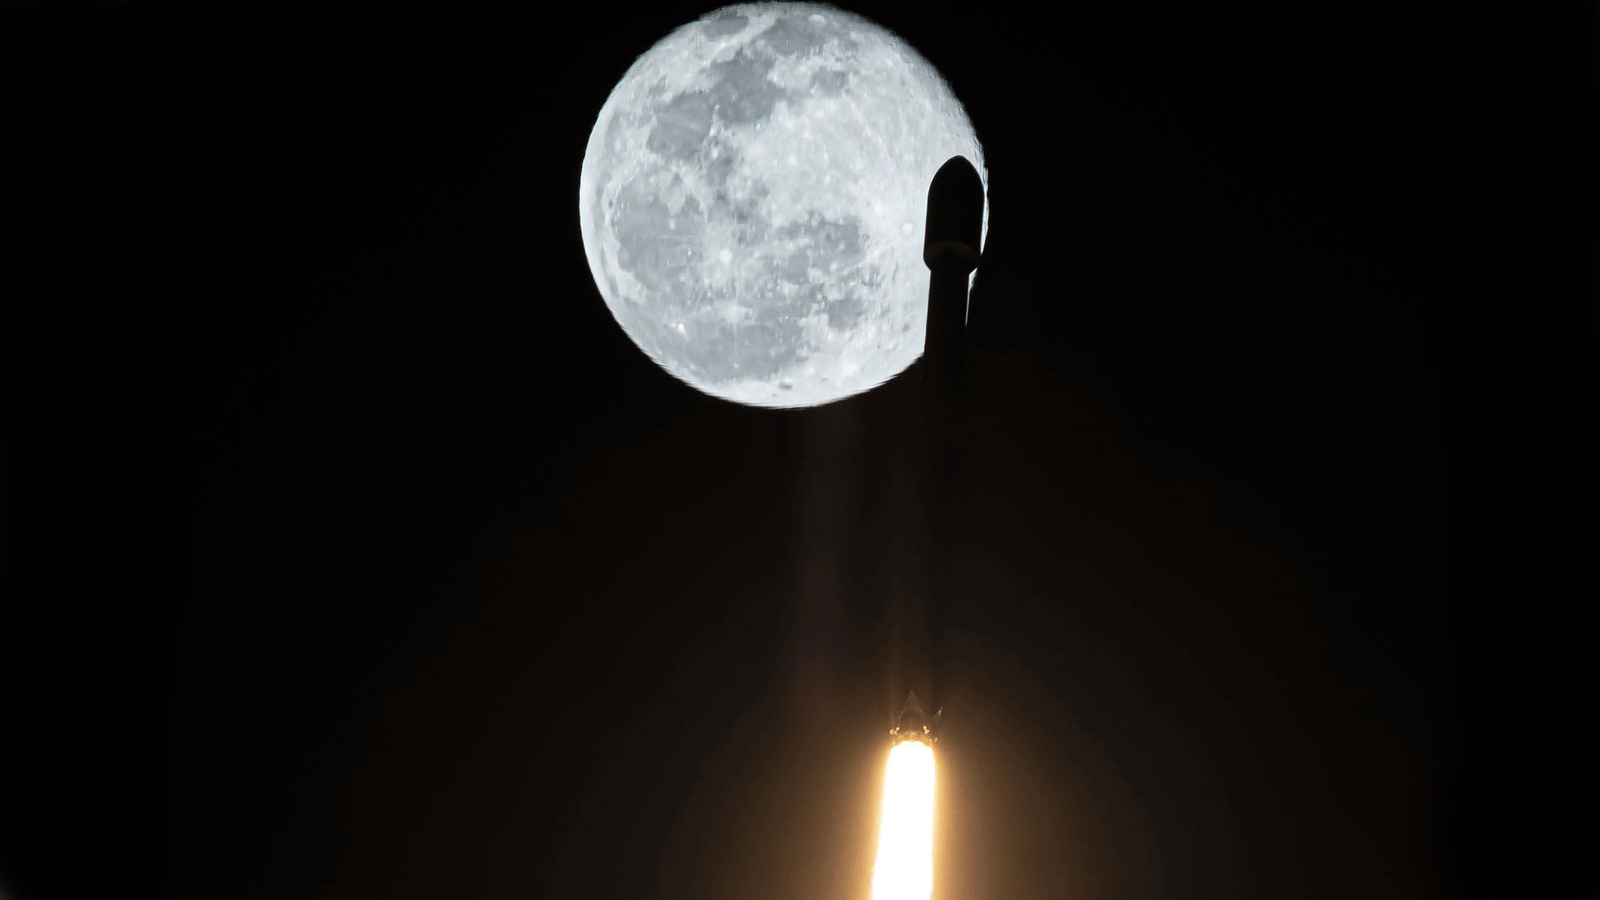 صورة للصاروخ من صفحة إيلون ماسك صاحب شركة سيايس أكس